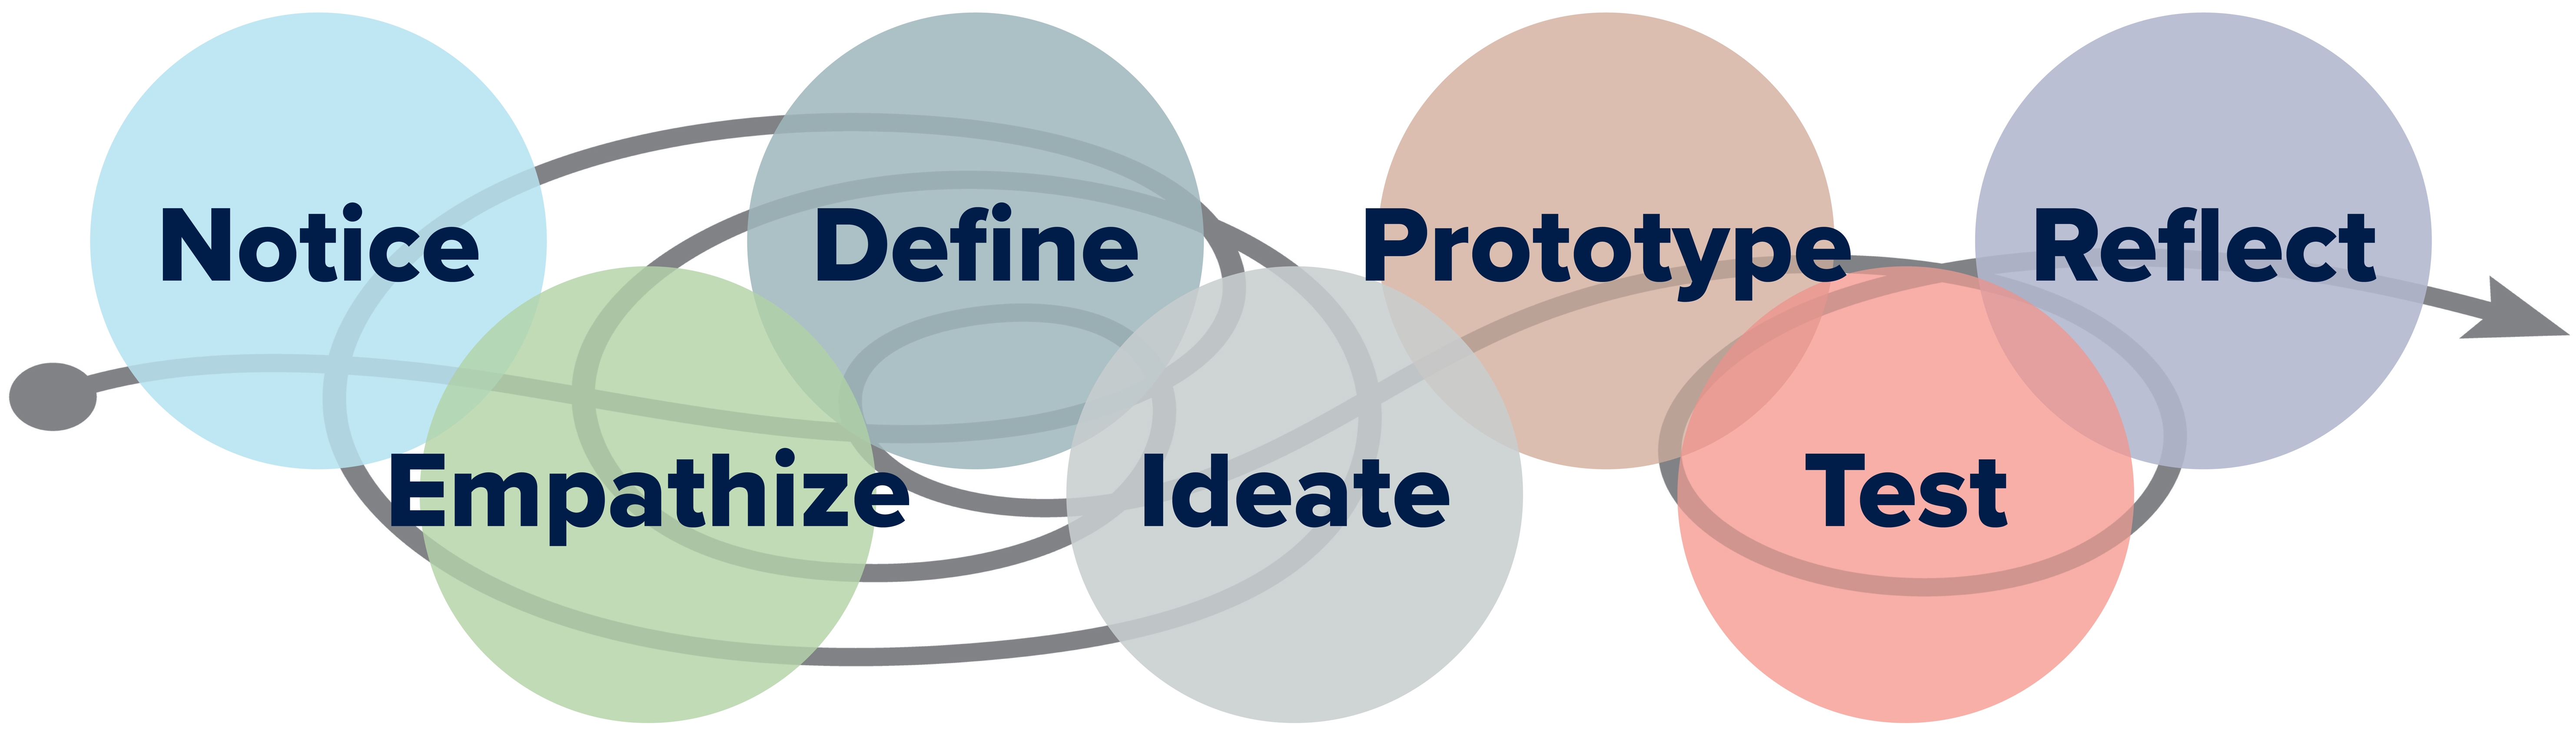 Design thinking journey visualization: Notice, Empathize, Define, Ideate, Prototype, Test, Reflect